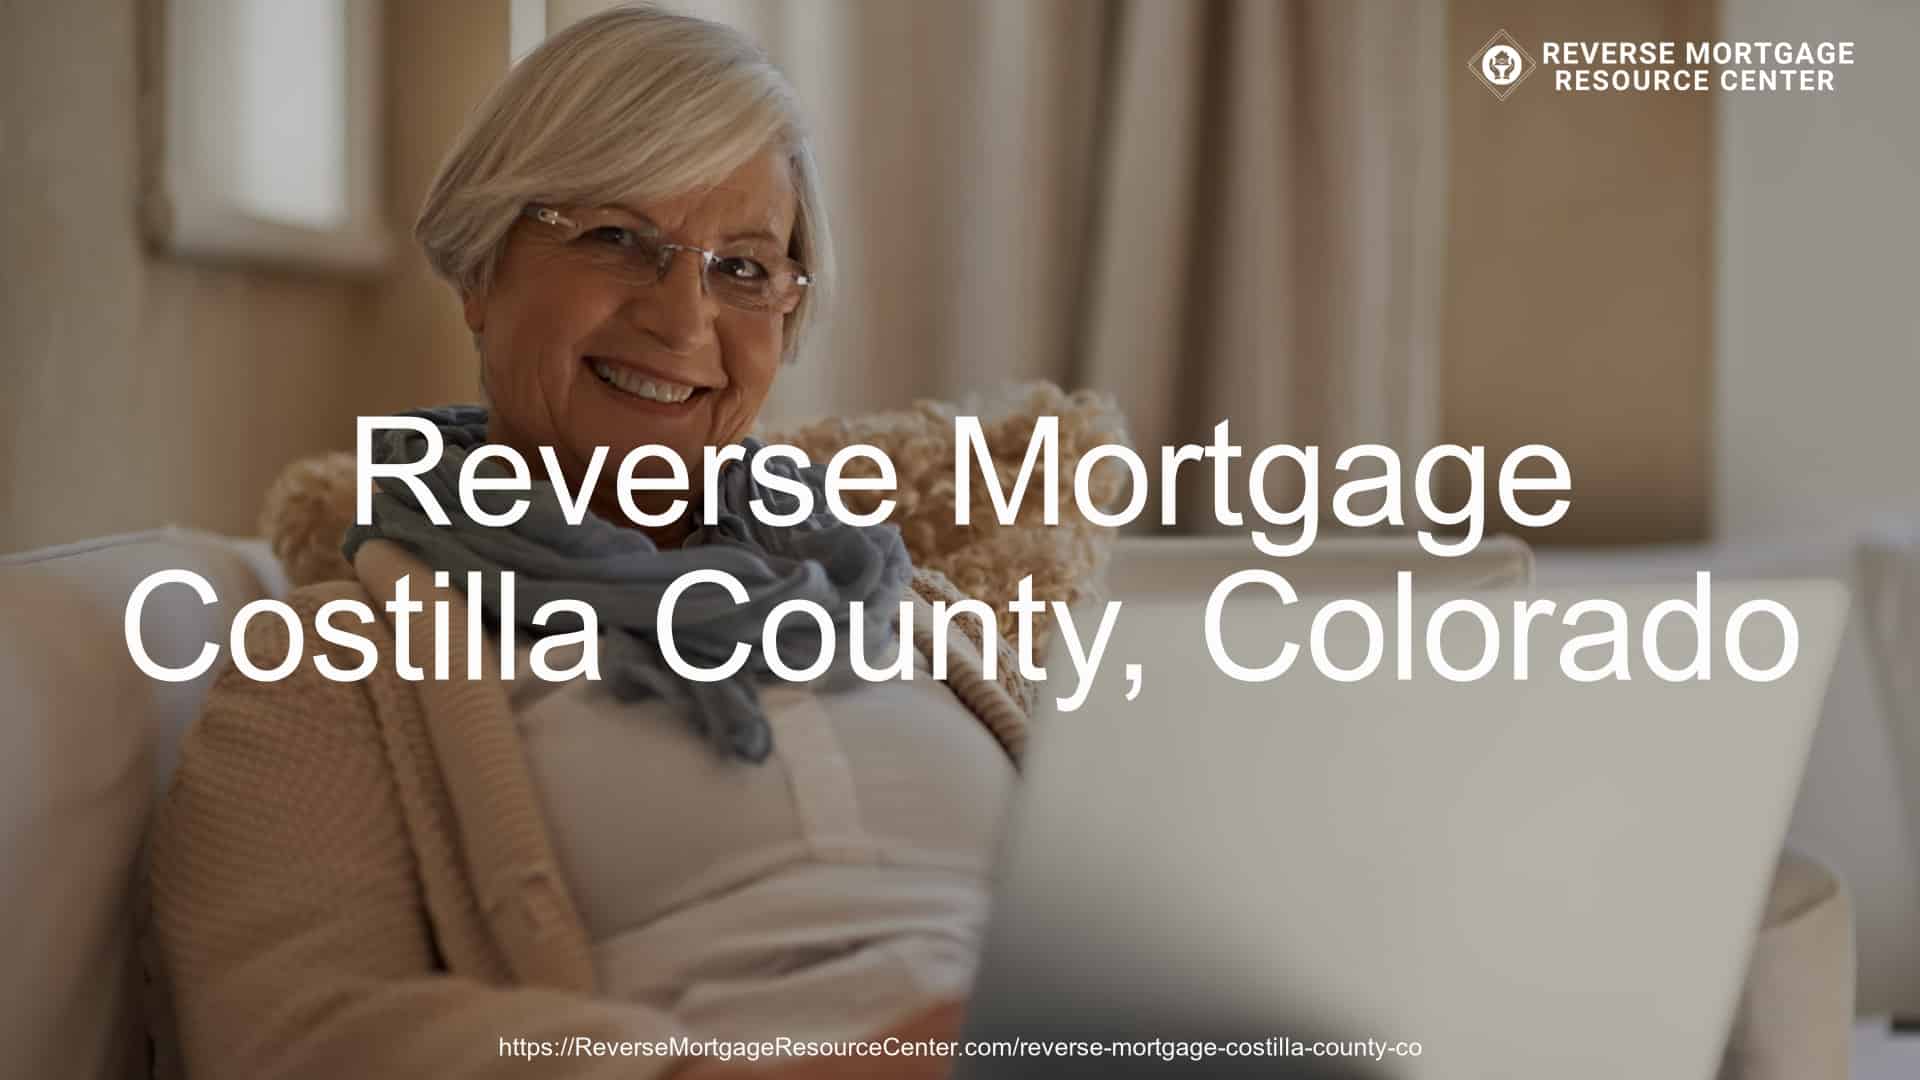 Reverse Mortgage Loans in Costilla County Colorado